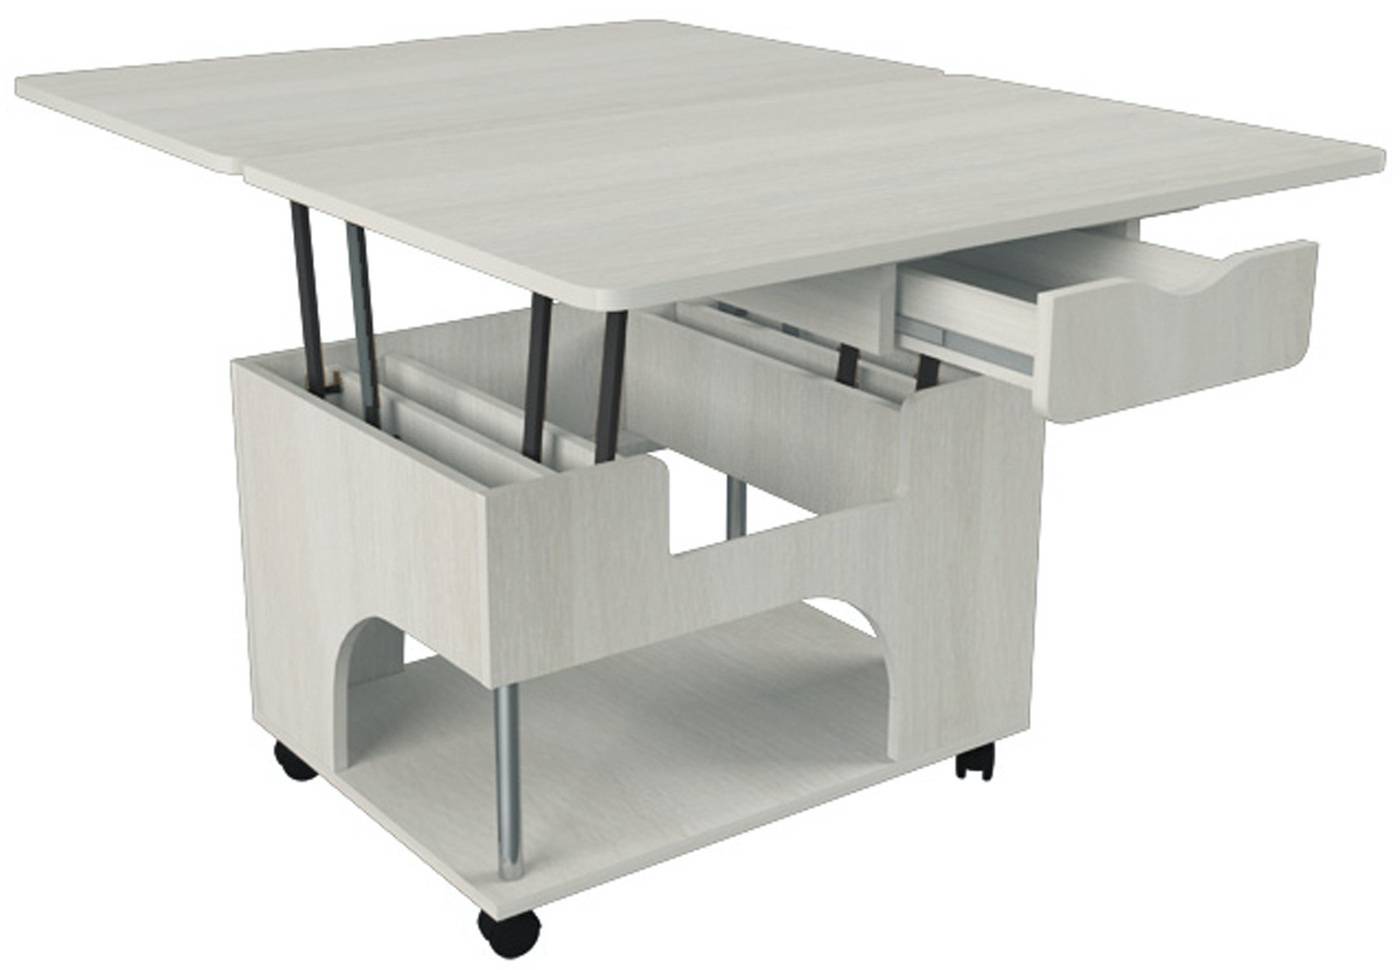 Стол-трансформер: примеры стильных, практичных и удобных моделей раскладывающихся столов